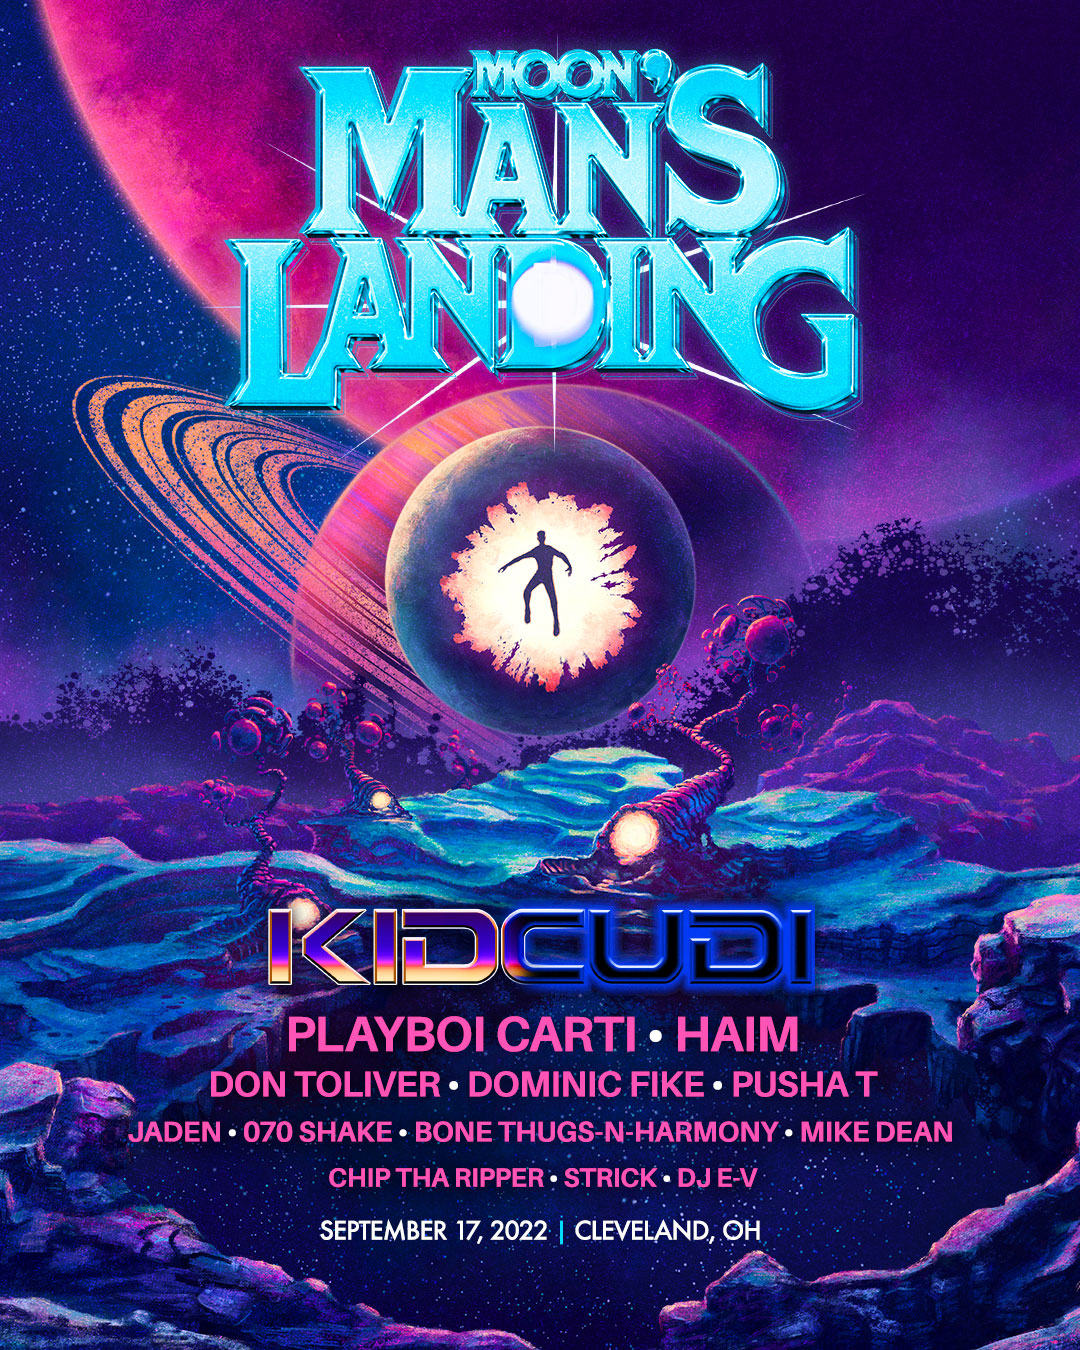 Moon Man's Landing 2022 poster